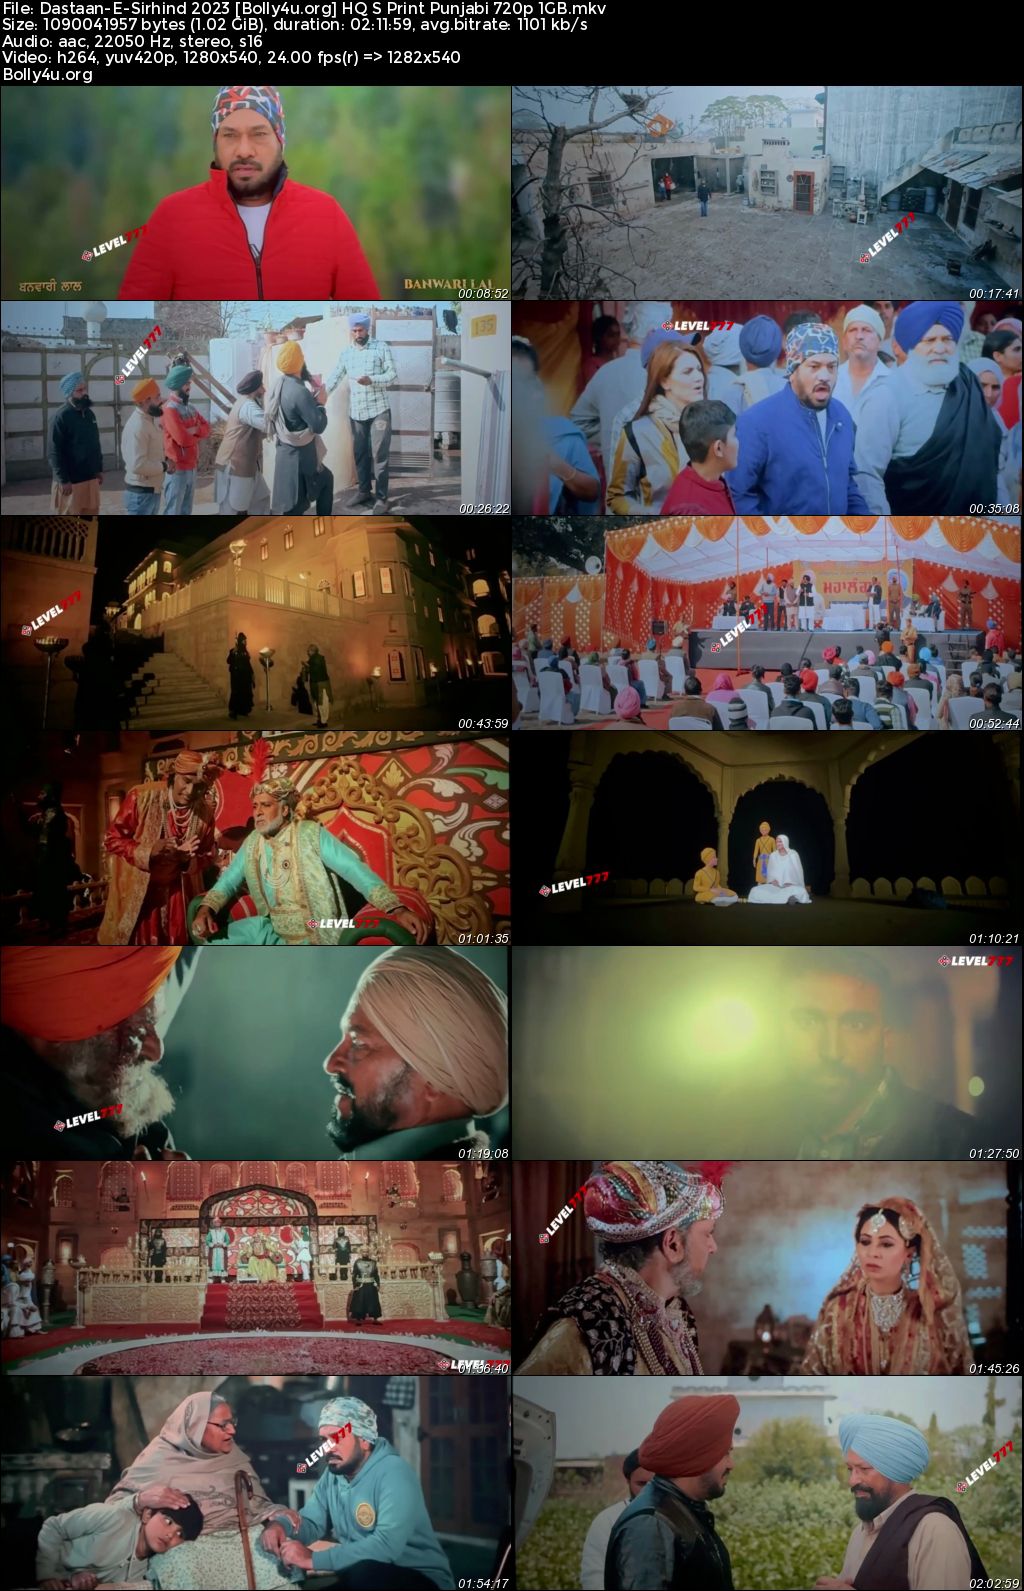 Dastaan-E-Sirhind 2023 HQ S Print Punjabi Full Movie Download 1080p 720p 480p